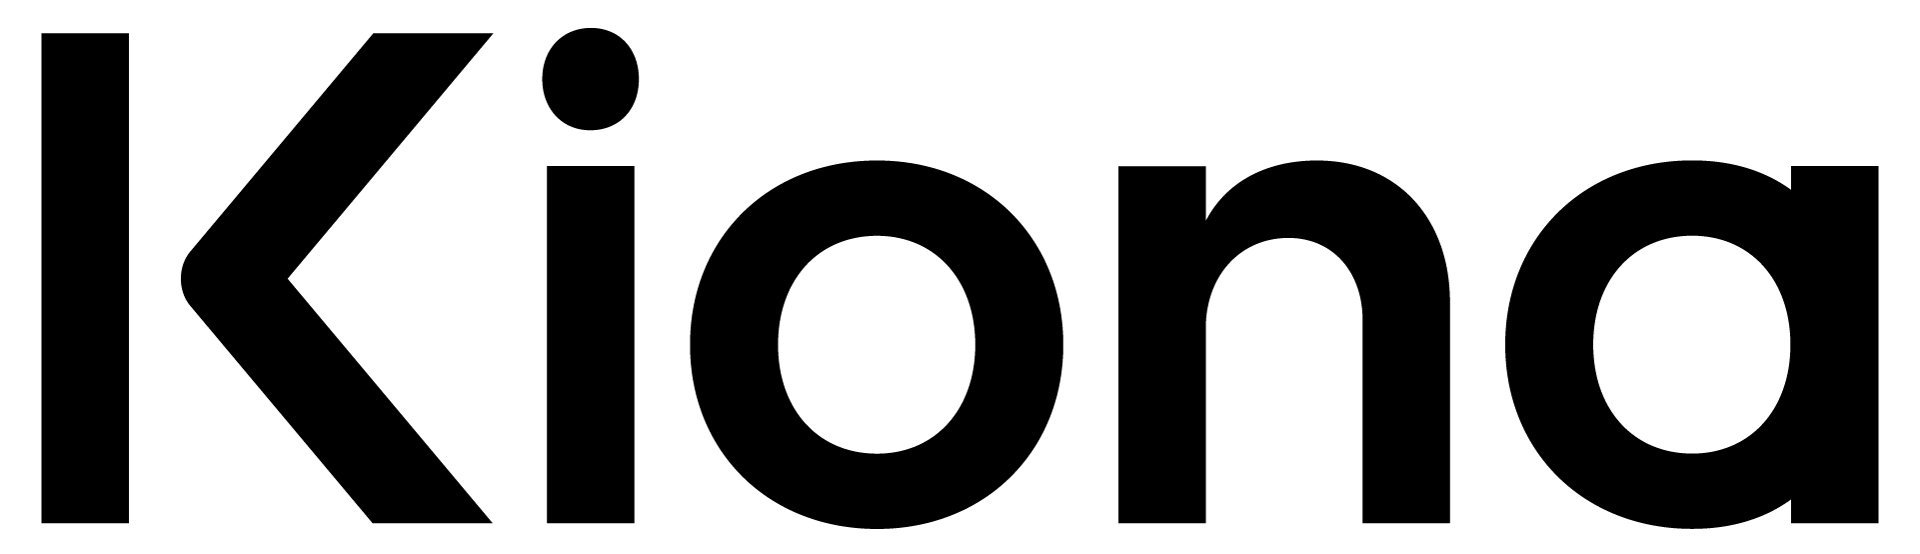 Kiona logo